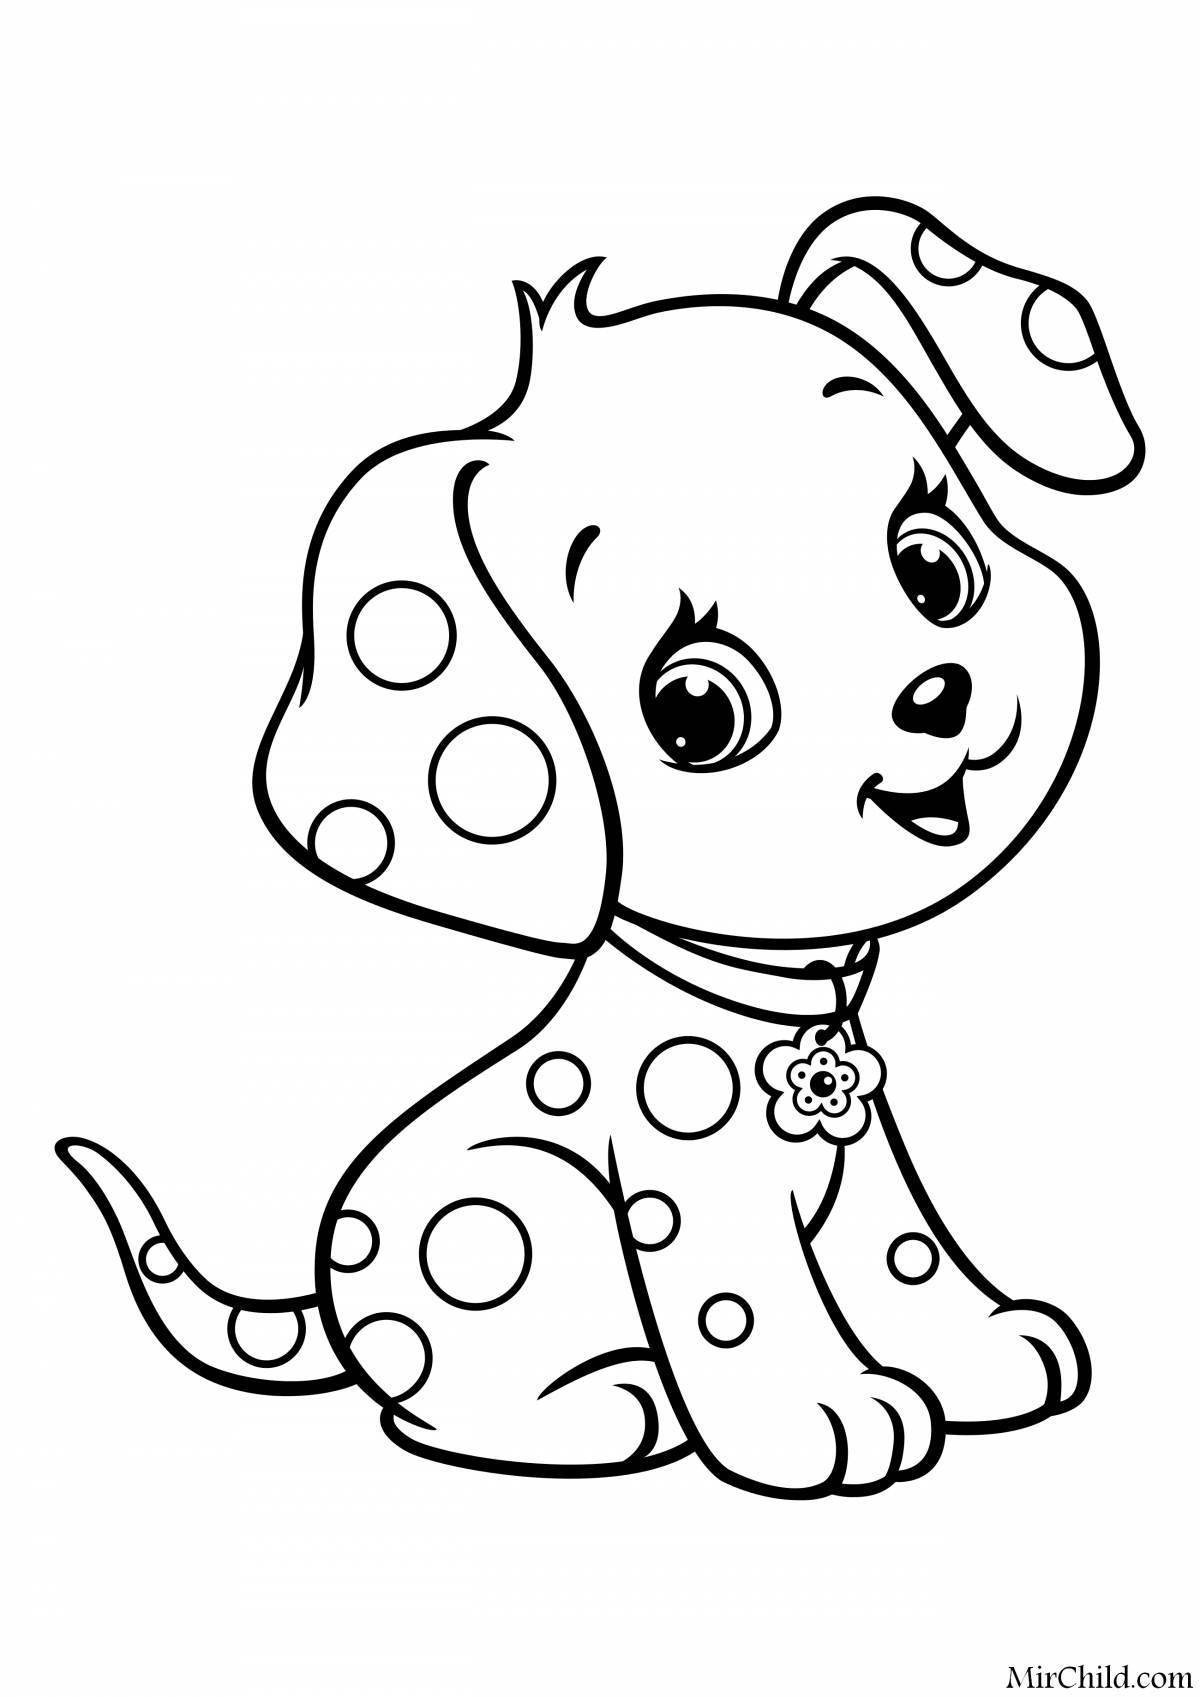 Раскраски собак и щенков для детей